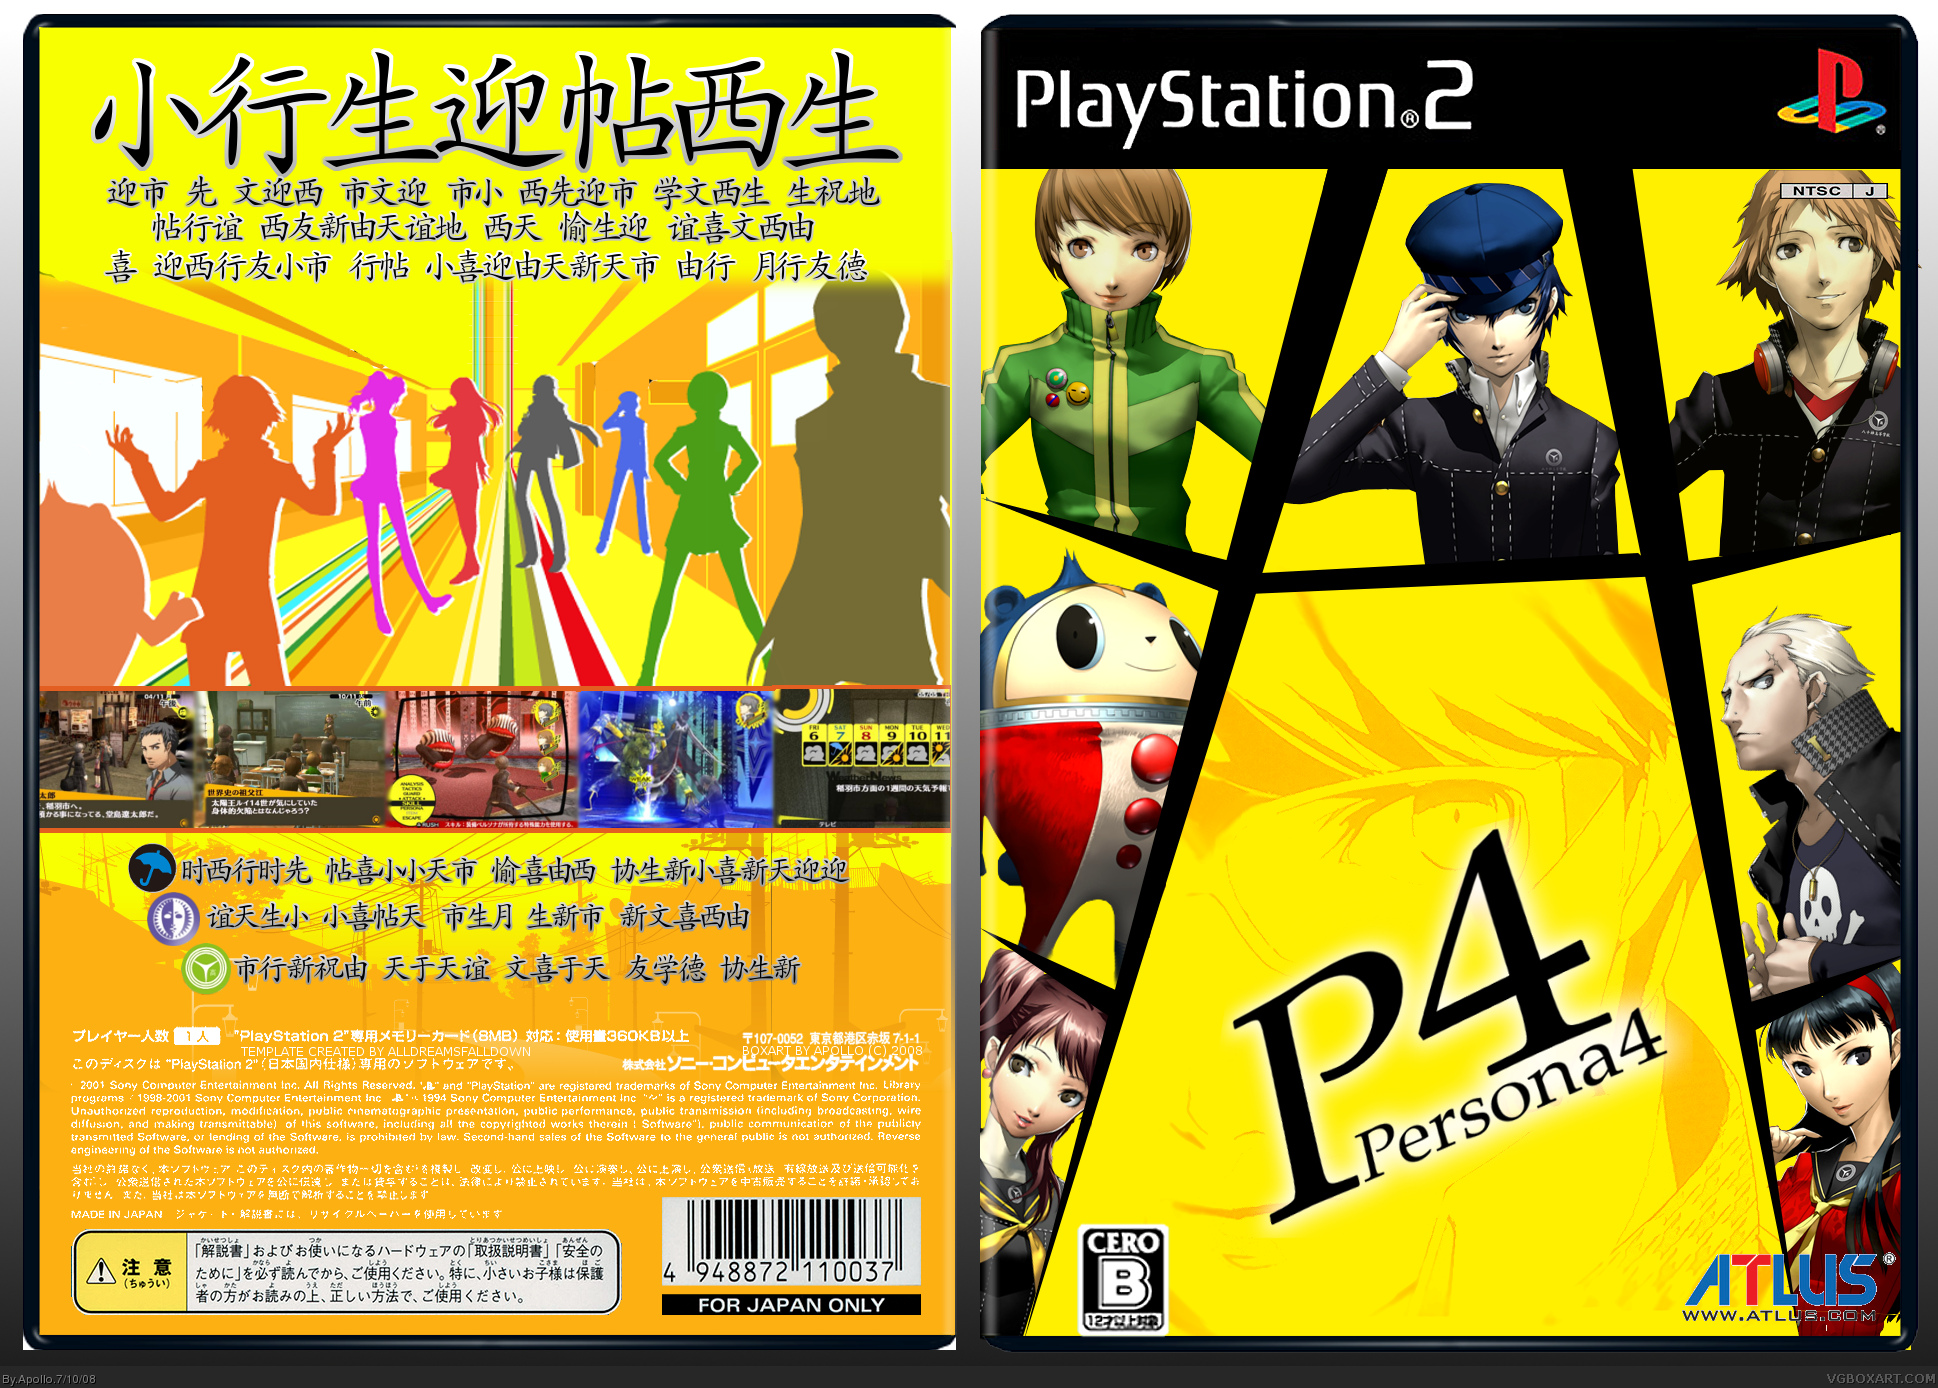 Persona 4 box cover